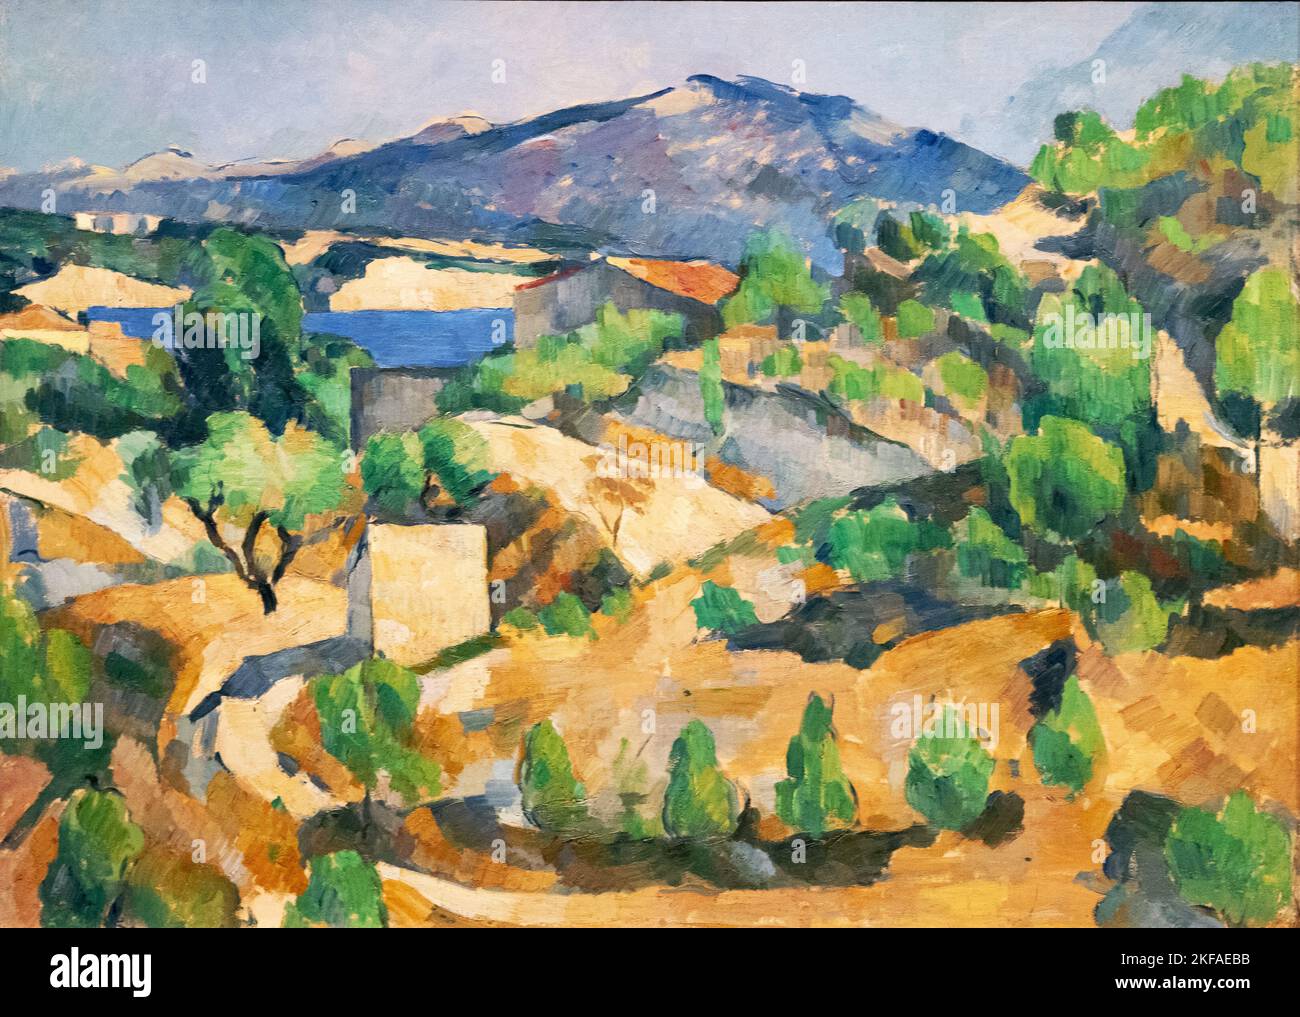 Paul Cezanne painting; Francois Zola Dam, 1887-8; L'Estaque, Aix-en-provence, France; Post Impressionism landscape painting, 19th century. Stock Photo